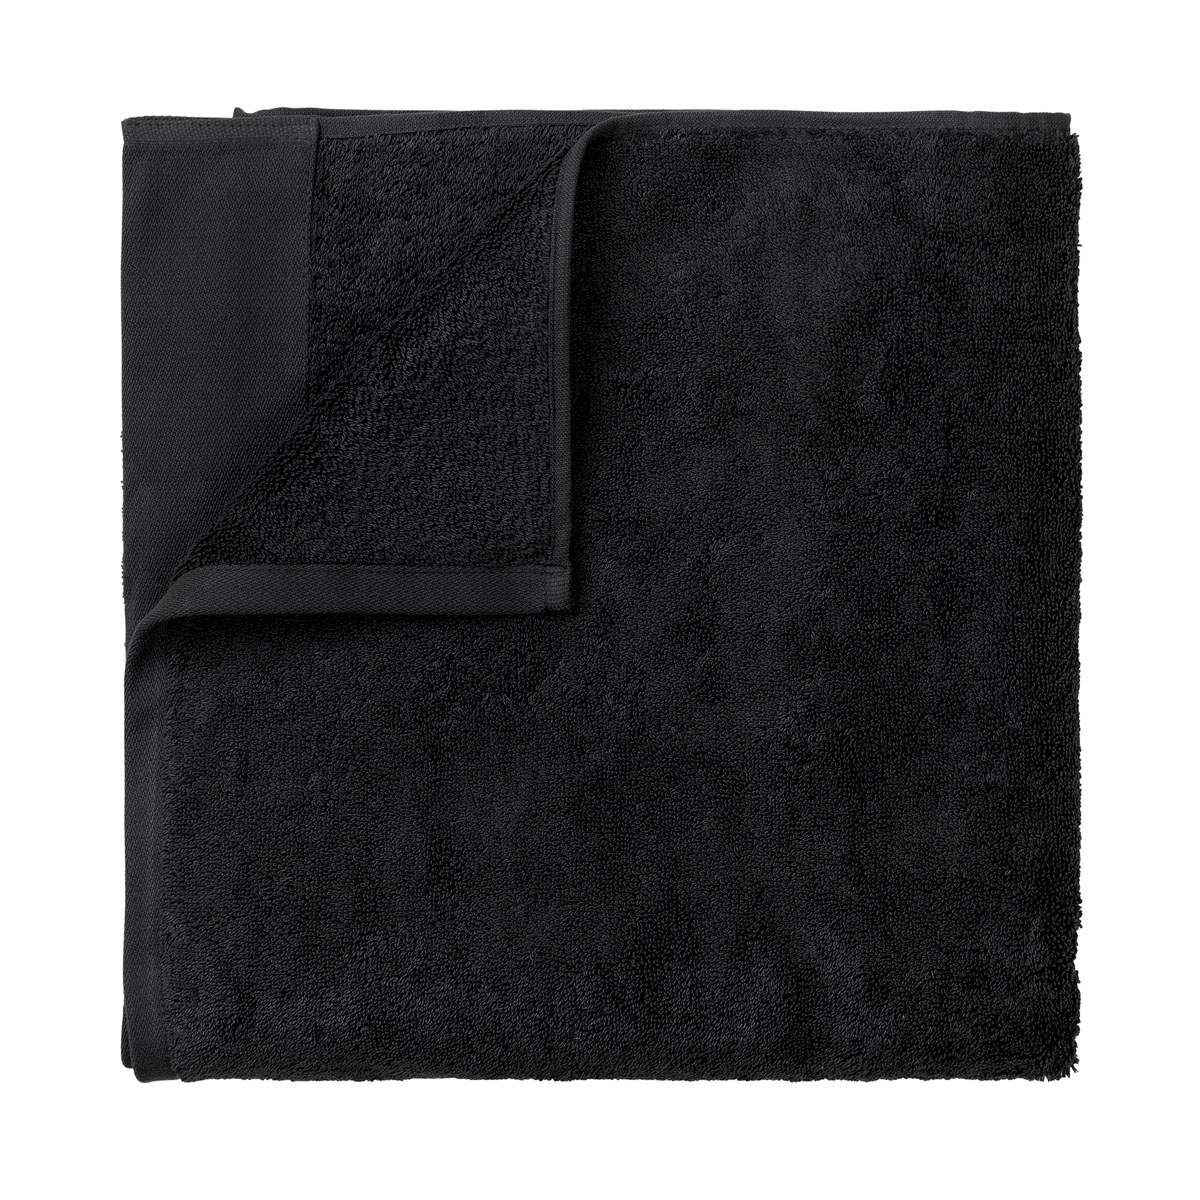 Badetuch -RIVA- Black 70 x 140 cm. Material: Baumwolle. Von Blomus.